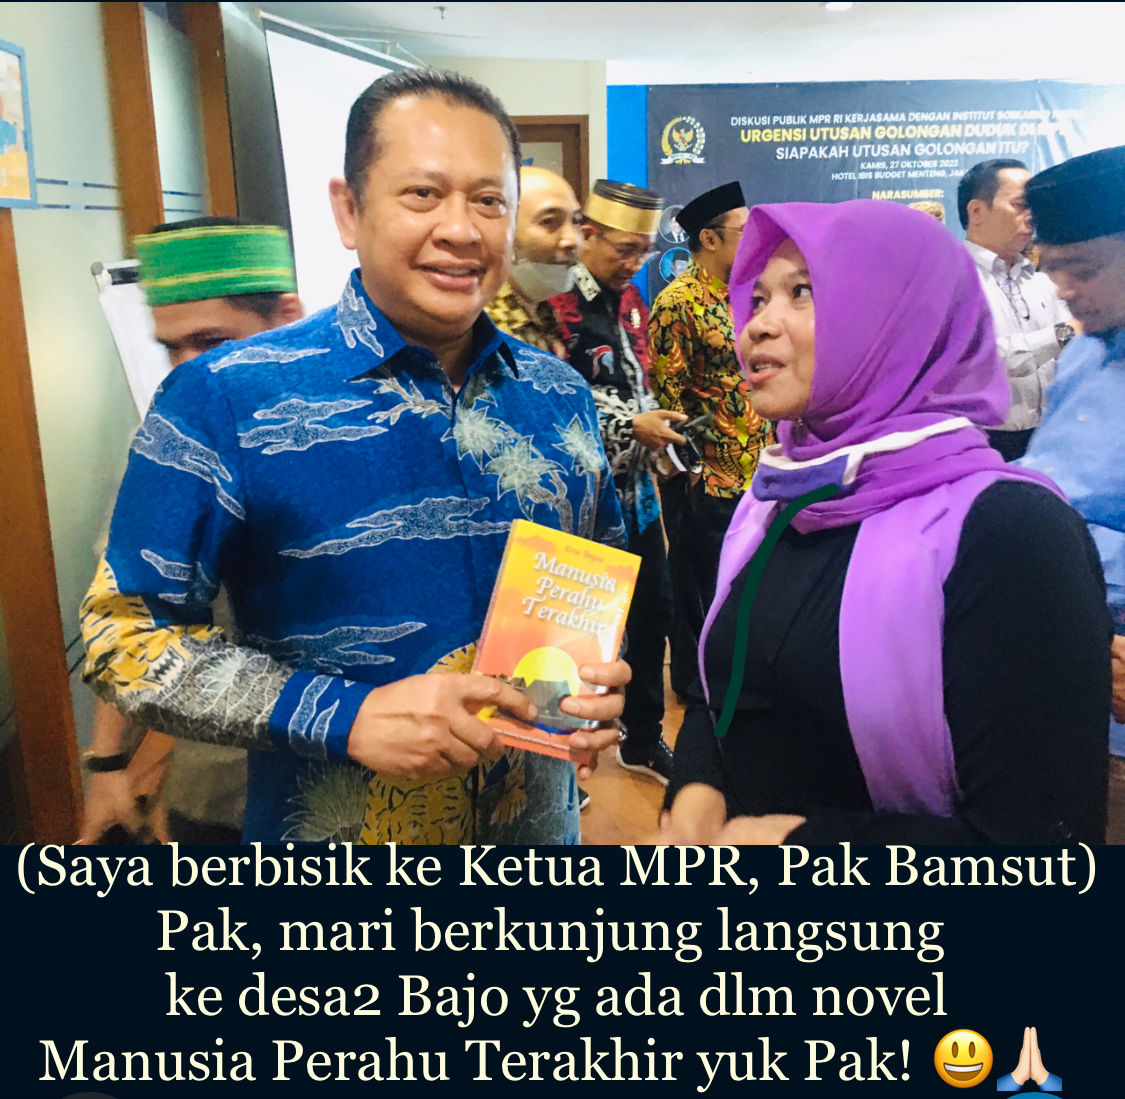 Foto Bersama Ketua MPR RI, Bambang Susatyo, di Acara Dialog “Urgensi Utusan Golongan Duduk di MPR” oleh IEPSH